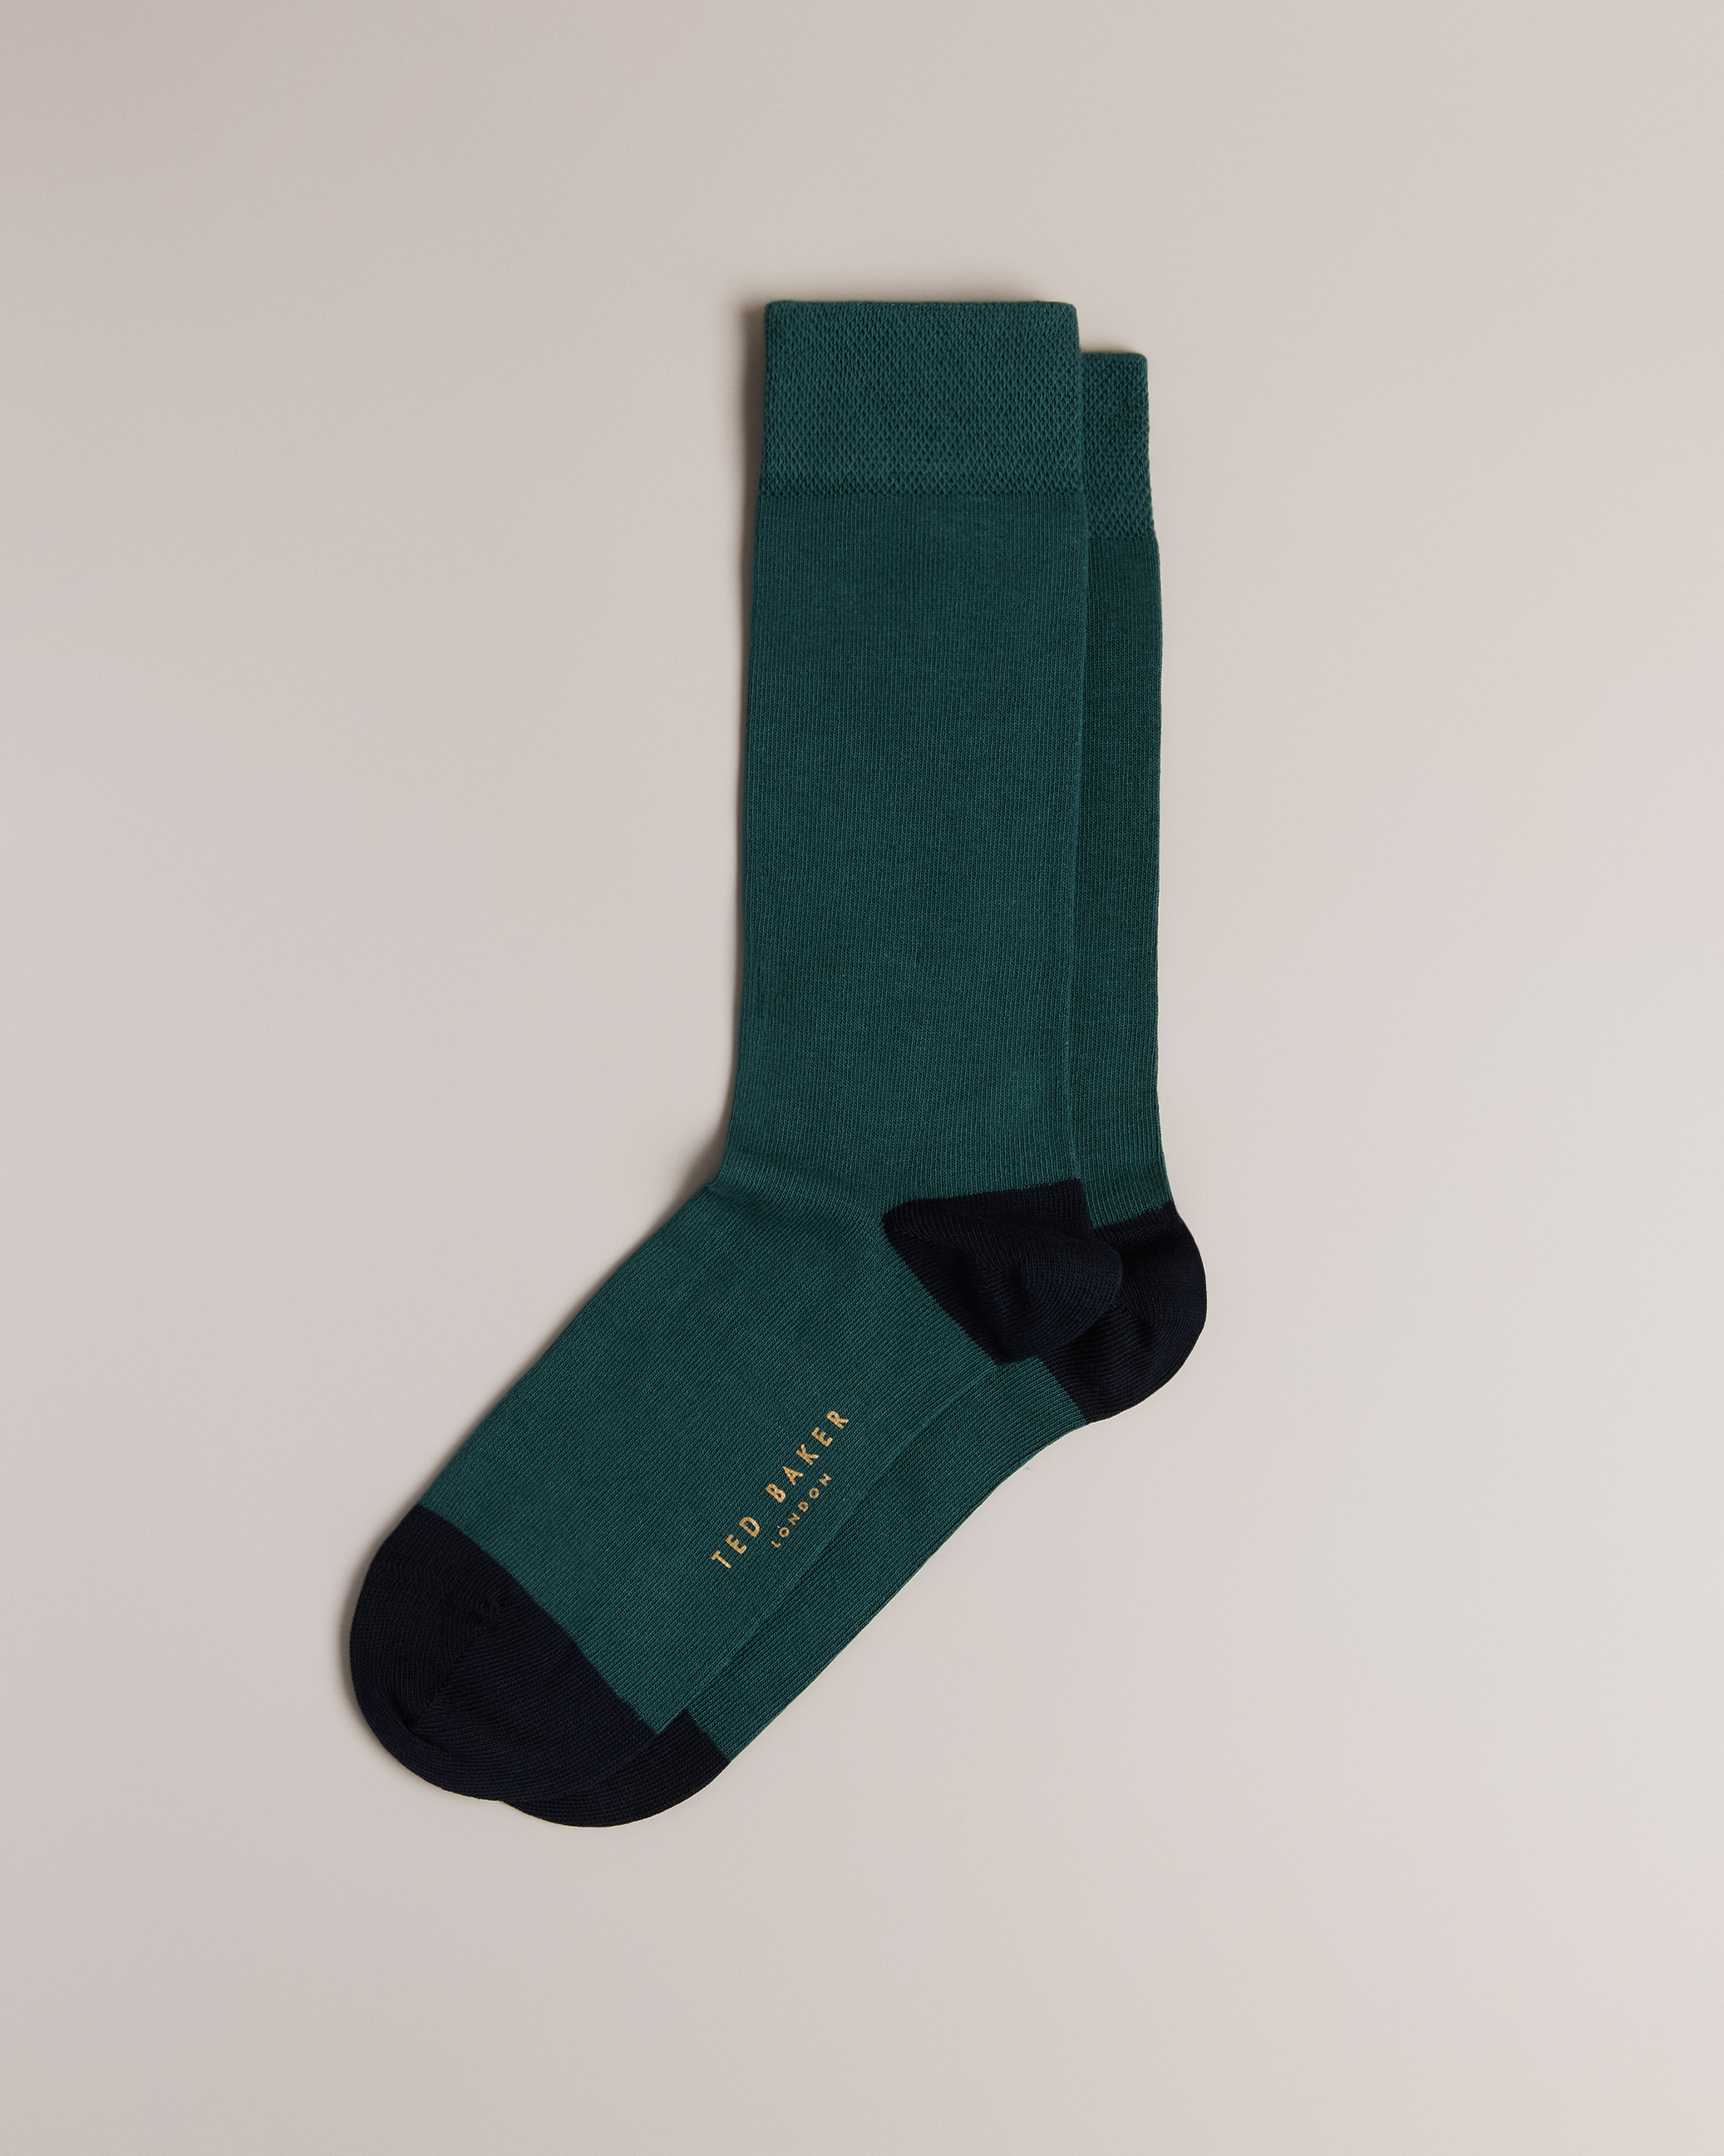 Ted Baker London Socks For Men